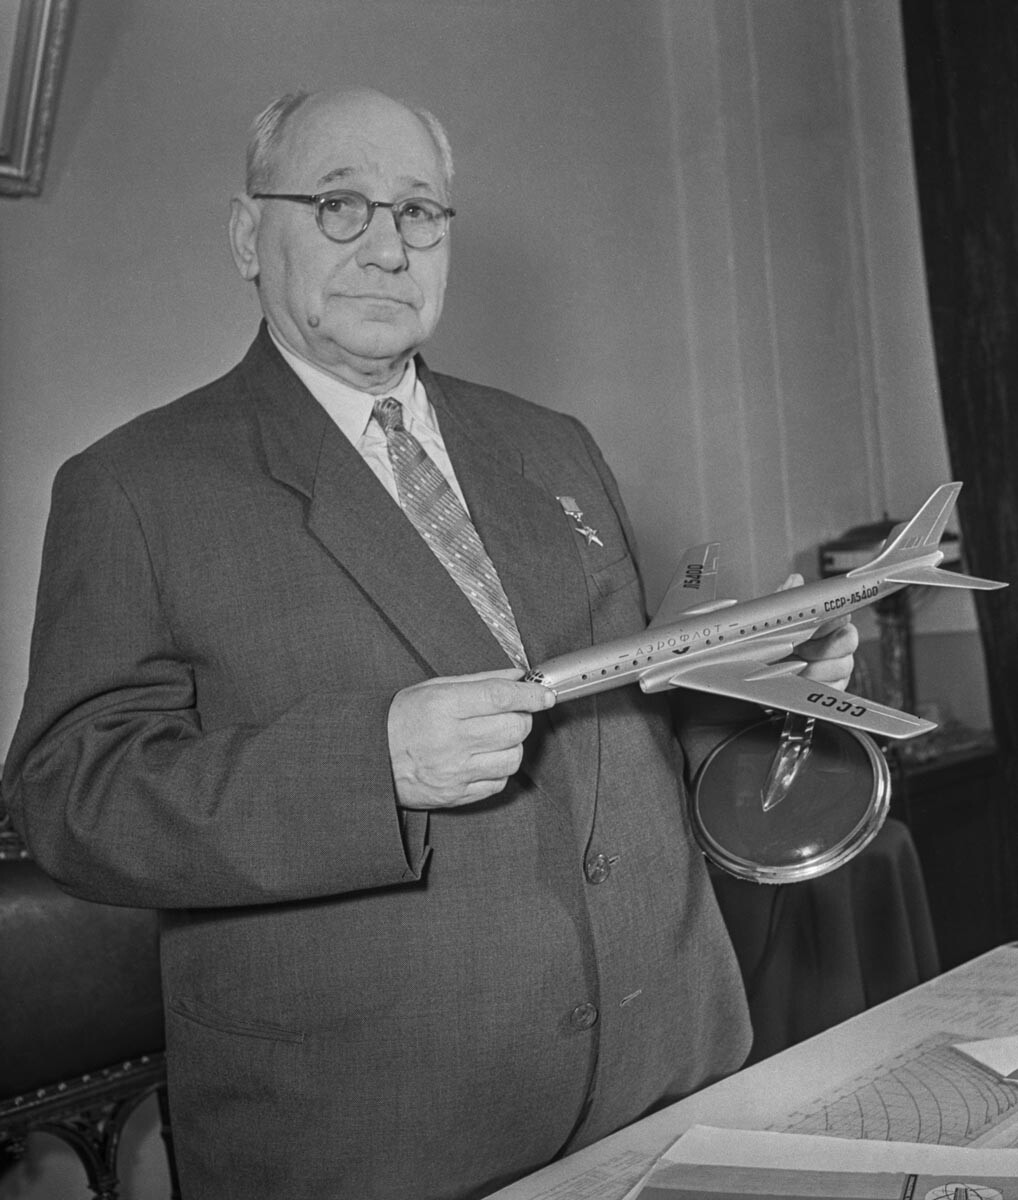 UDSSR. Moskau. 1957: Ordentliches Mitglied der Akademie der Wissenschaften der UdSSR, Flugzeugkonstrukteur Andrej Tupolew in seinem Arbeitszimmer.